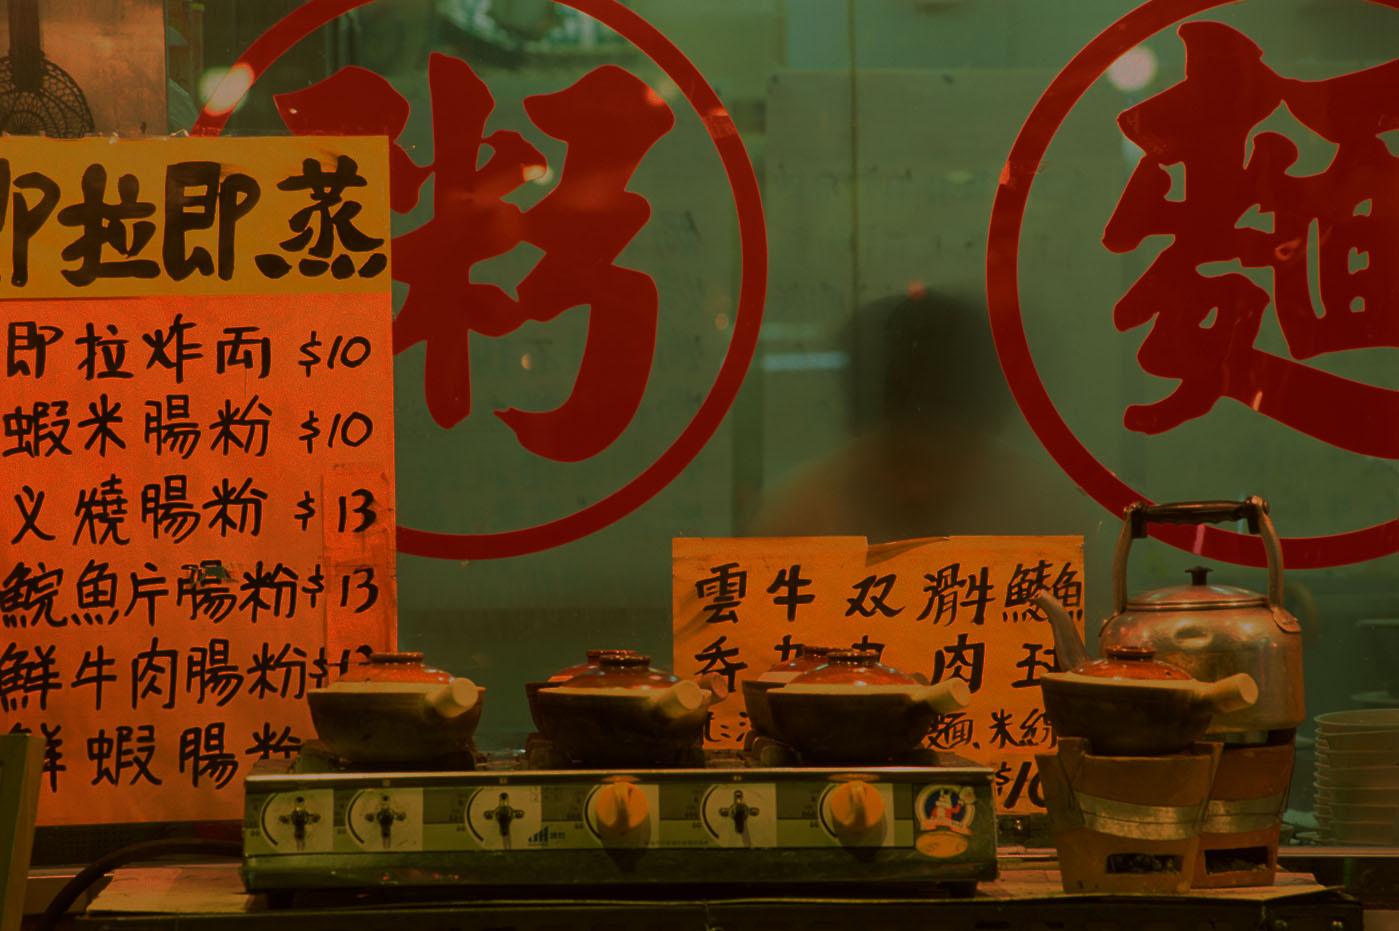 Kineski restoran sa znakovima na kineskom.